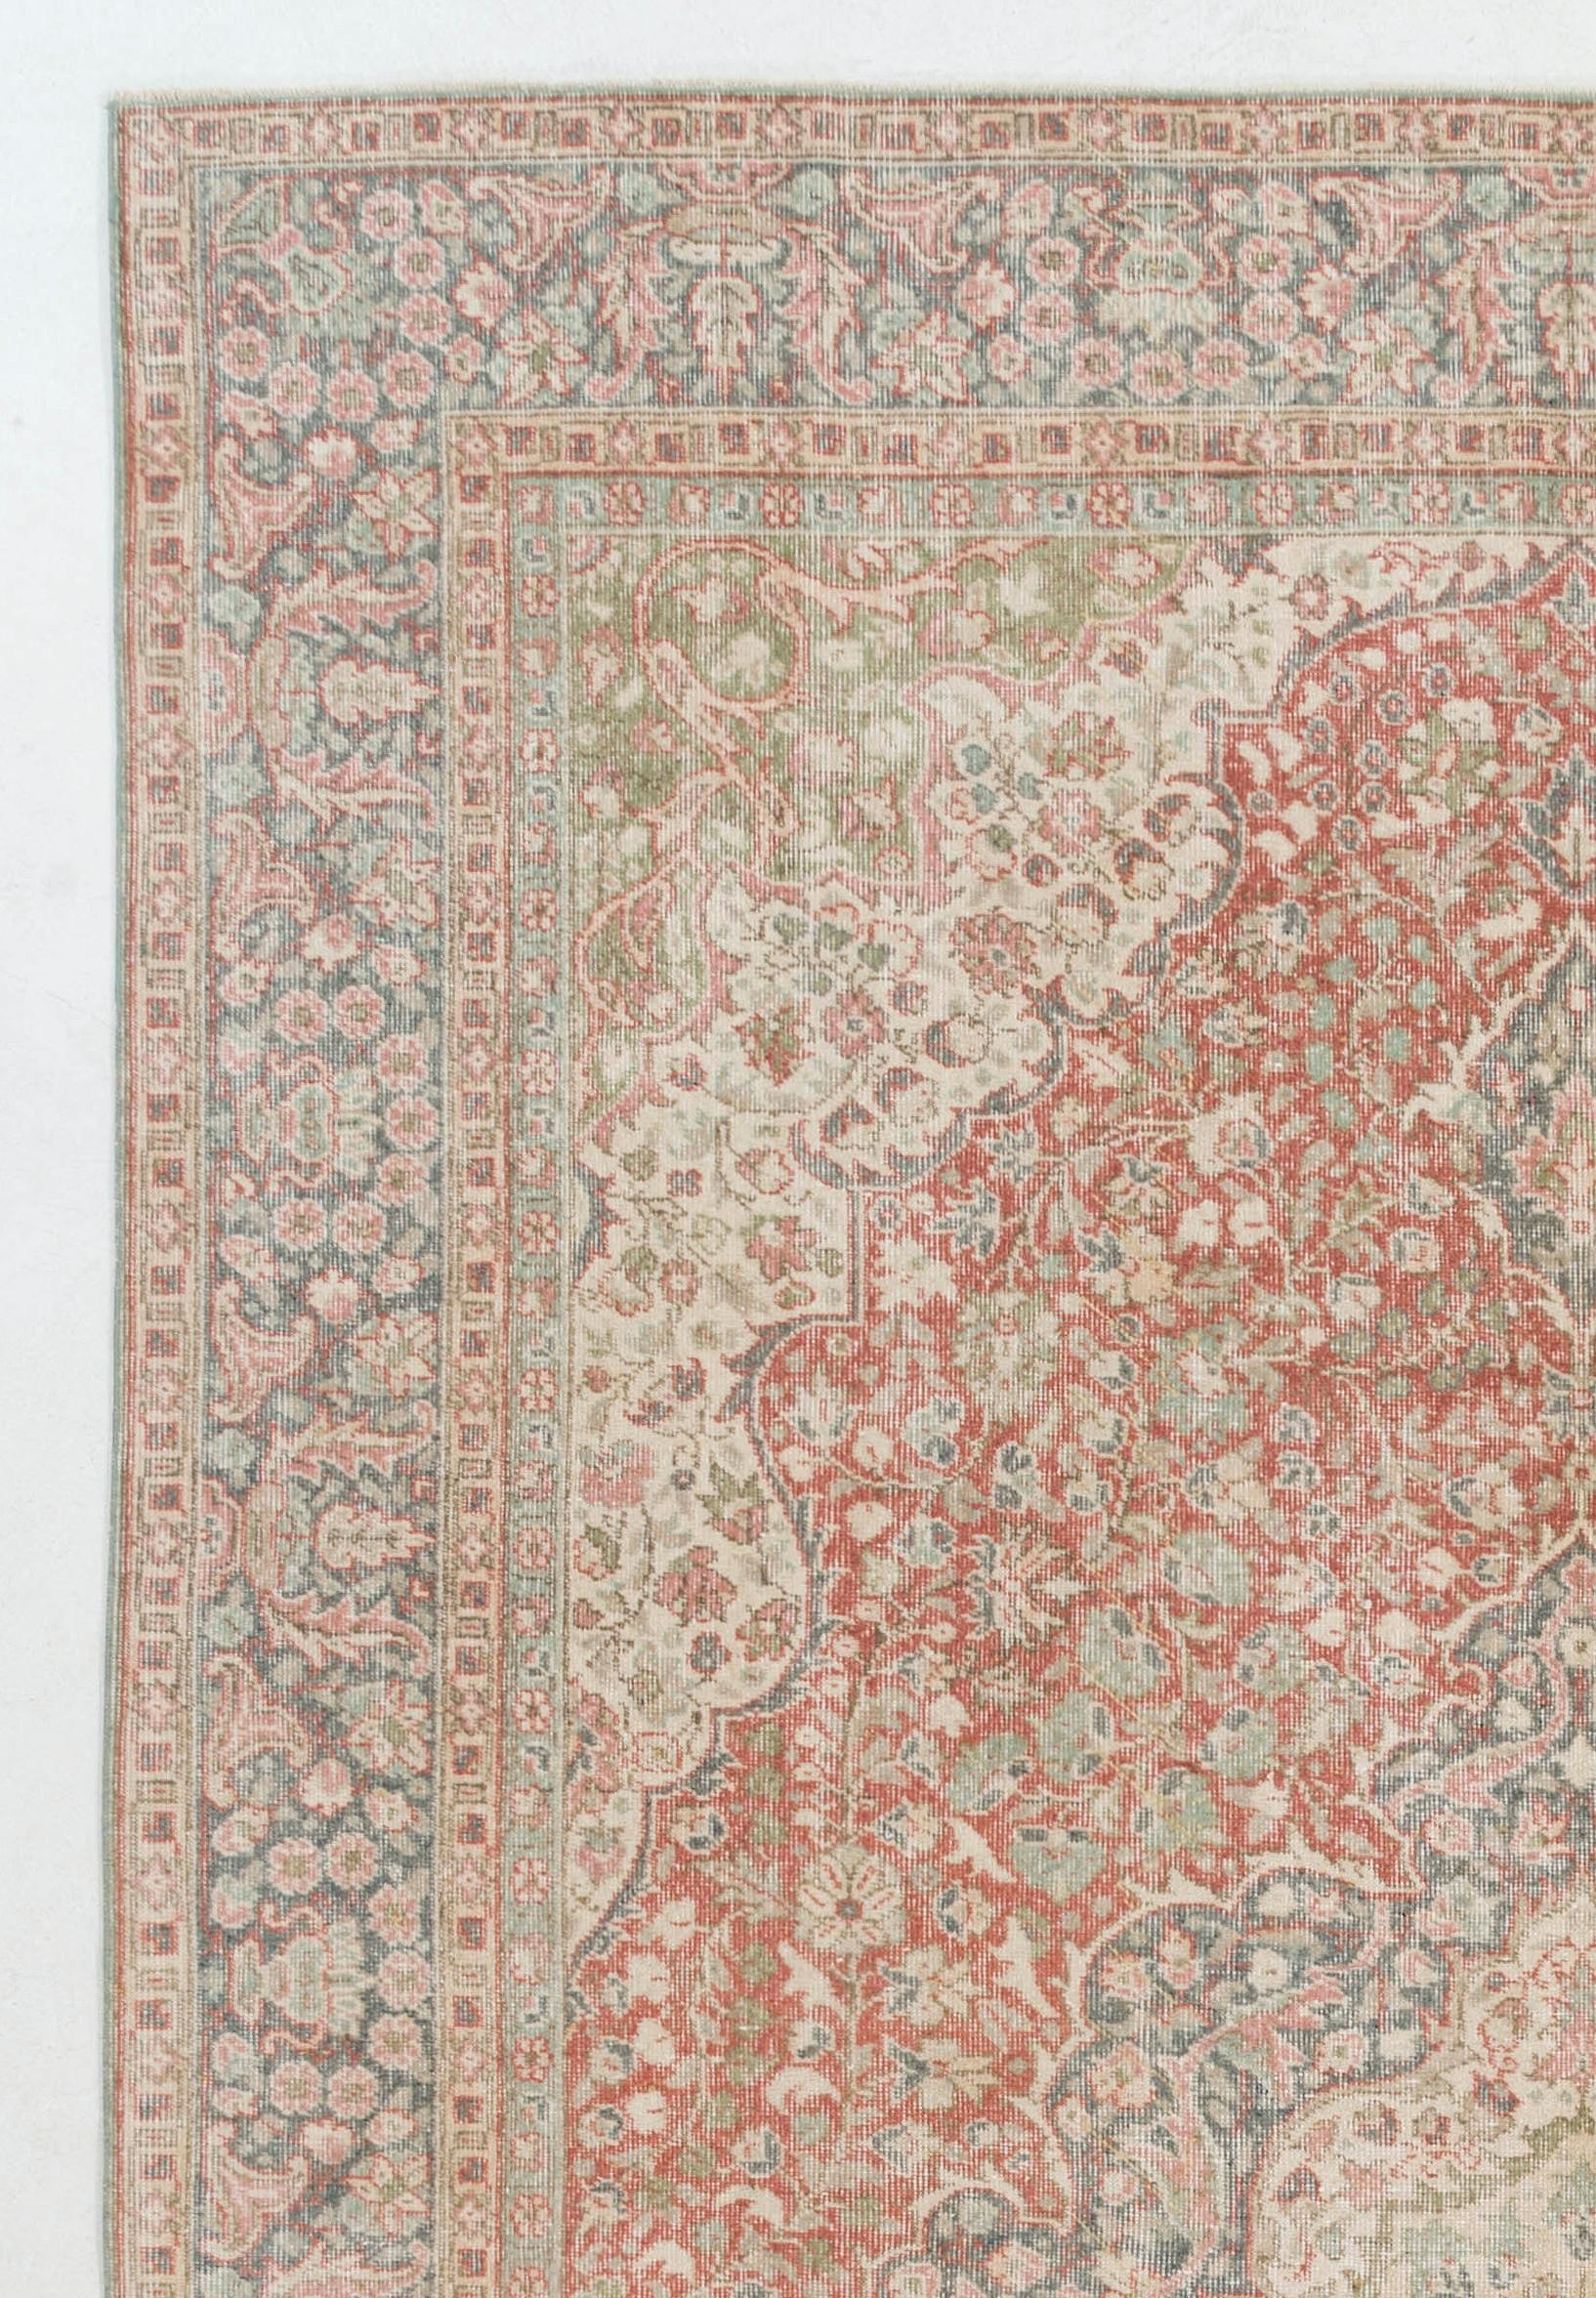 Ein handgefertigter türkischer Teppich im Vintage-Stil mit einem eleganten, klassischen Design, bei dem ein Medaillon in der Mitte eines ähnlich geformten Feldes steht, das wie ineinander verschachtelte Diamanten wirkt. Jeder separat definierte